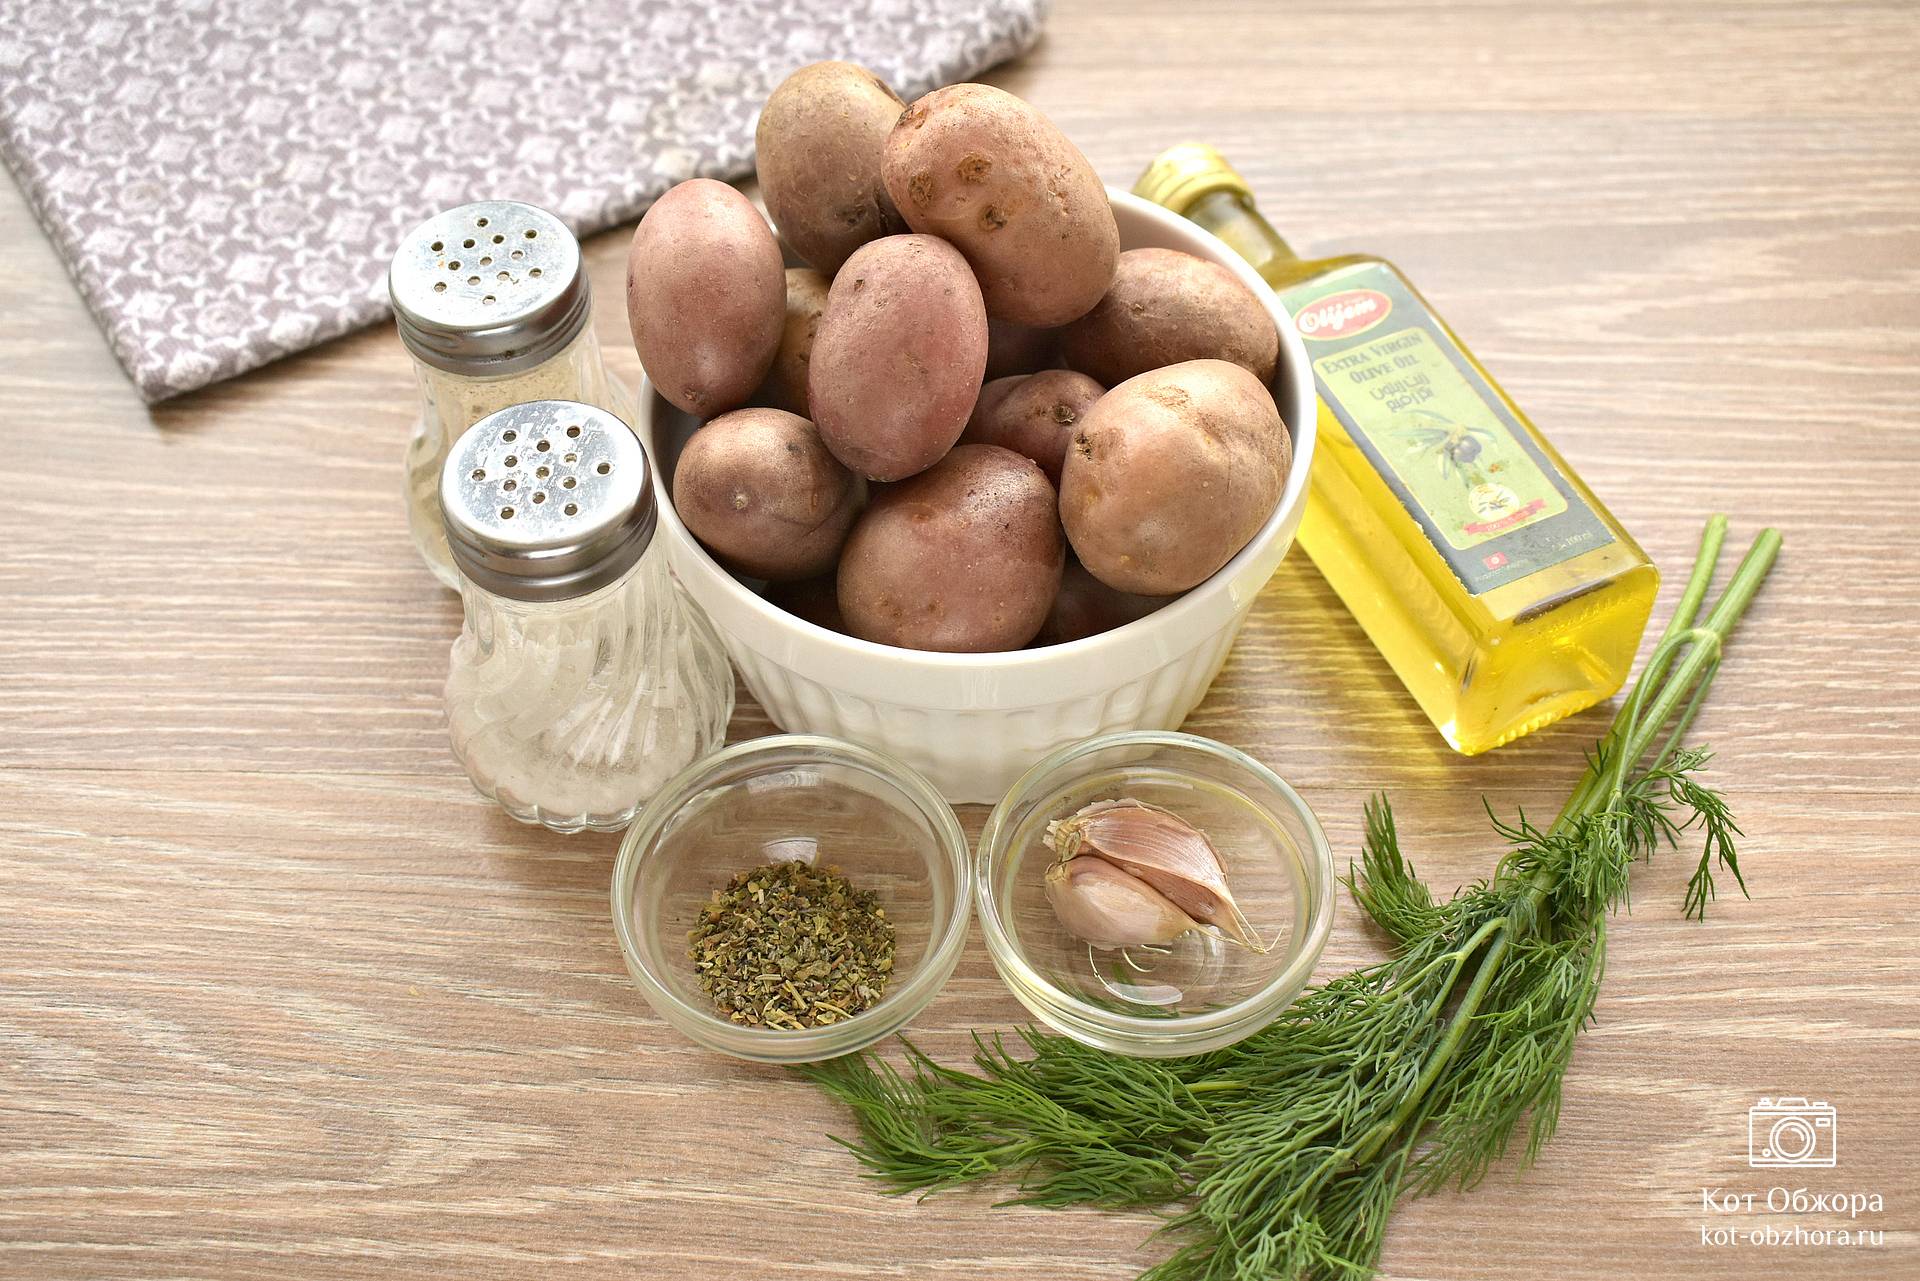 Мятая картошка в духовке, пошаговый рецепт на ккал, фото, ингредиенты - Констанция